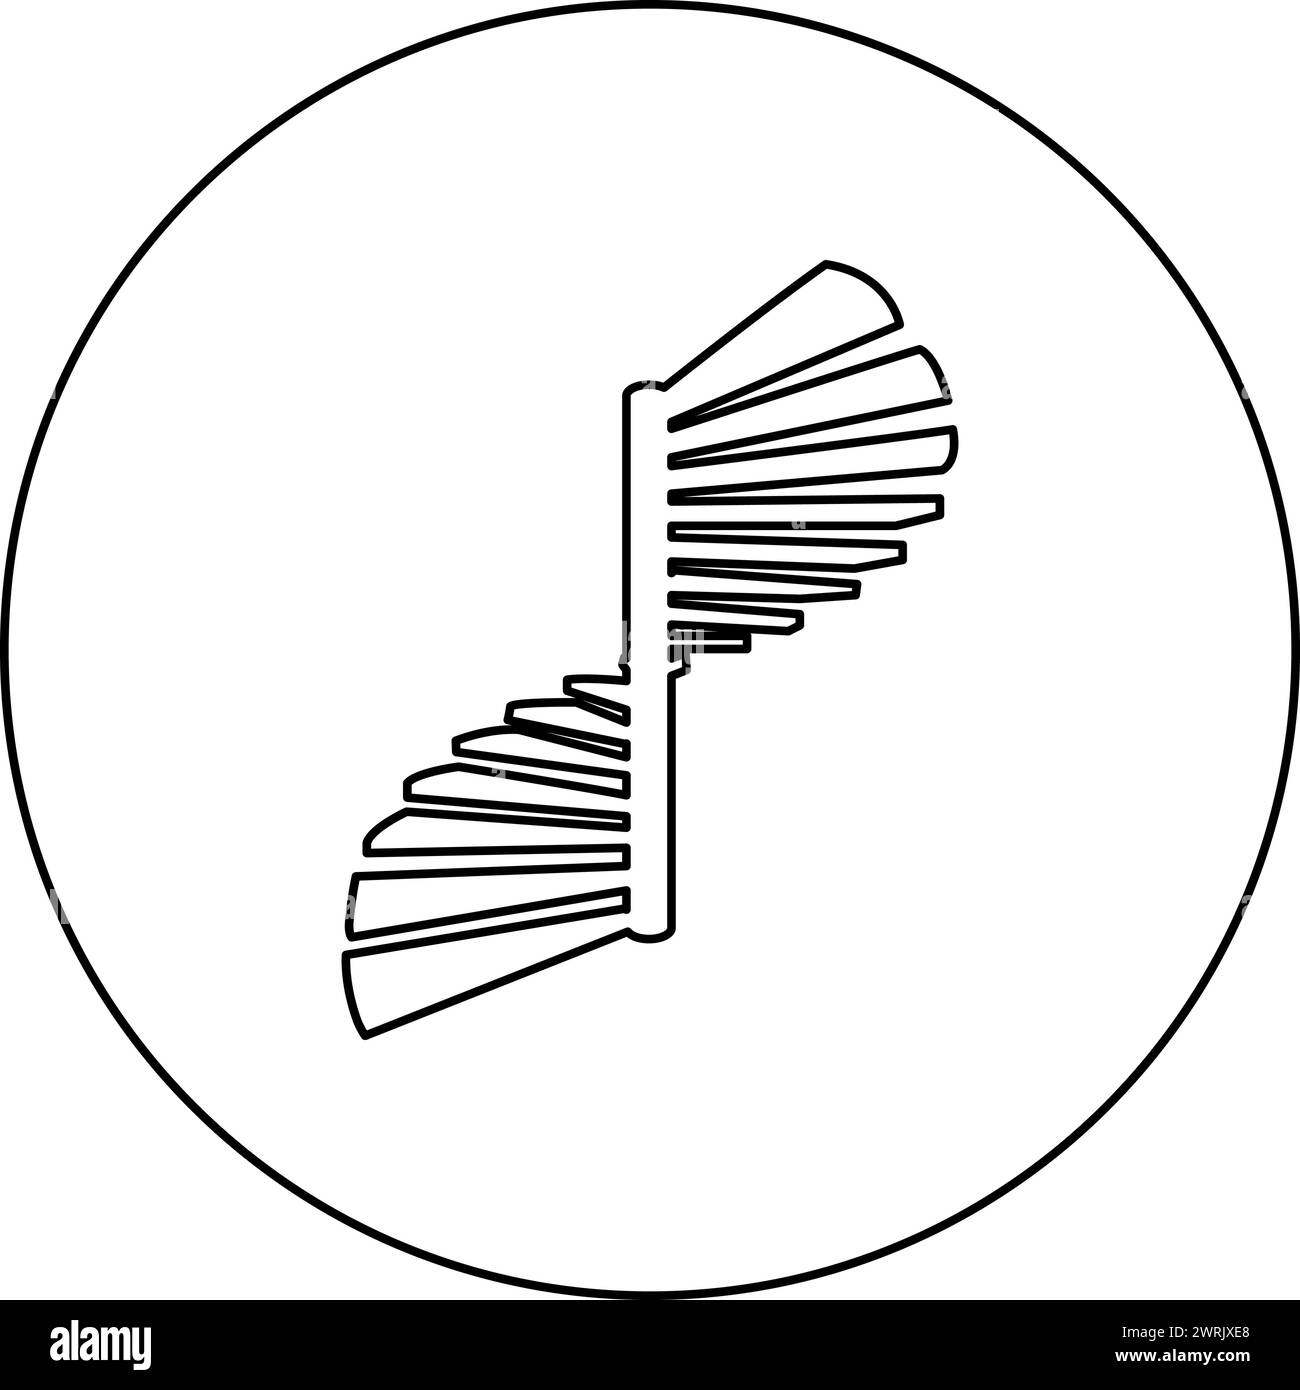 Escalier en colimaçon icône d'escalier circulaire en cercle rond noir illustration vectorielle d'image contour ligne de contour mince style simple Illustration de Vecteur